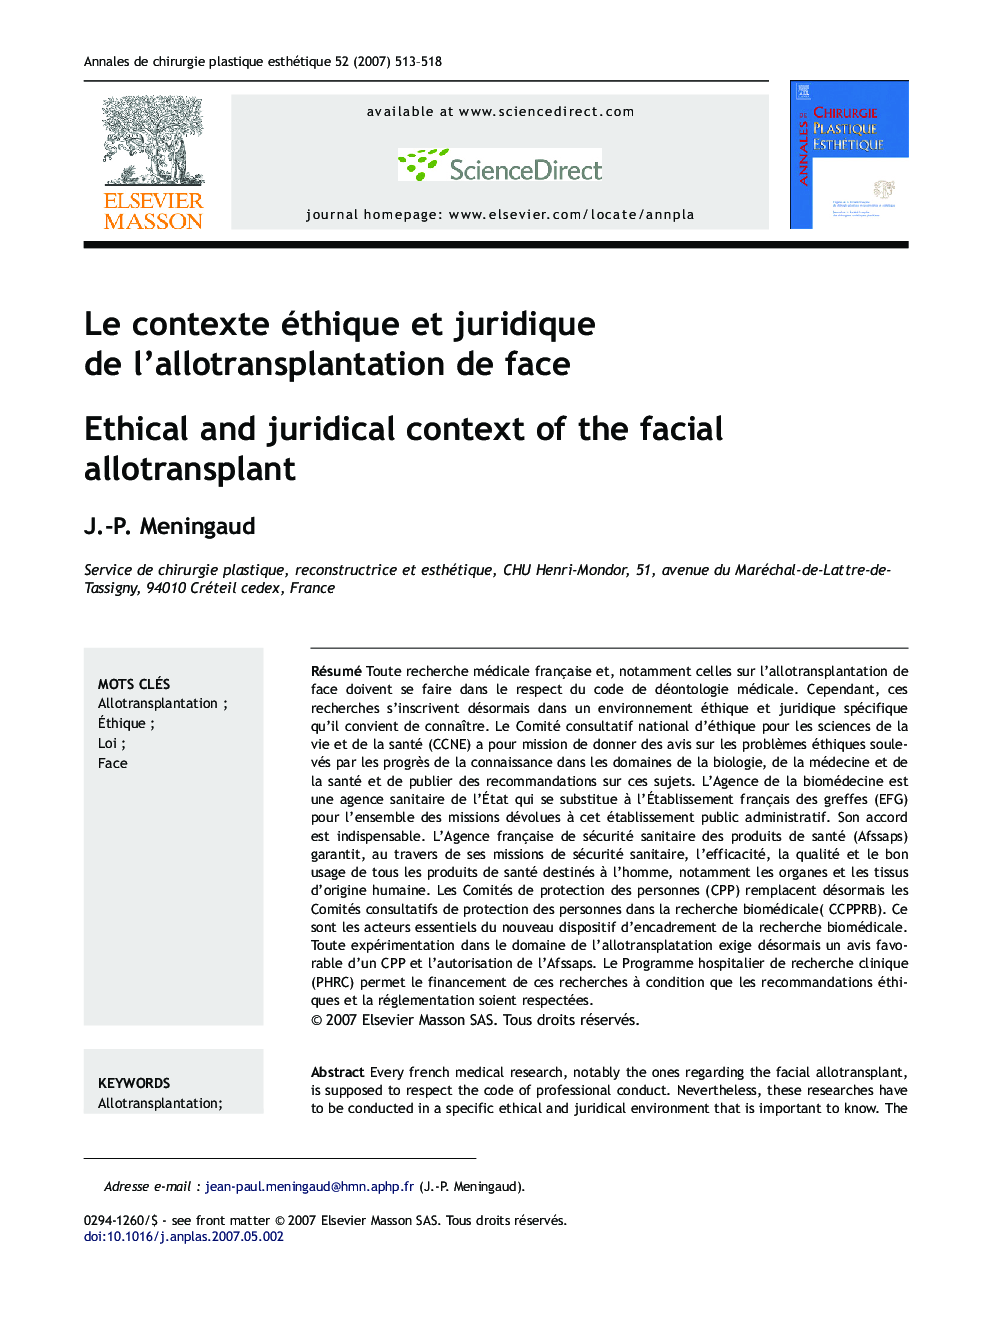 Le contexte éthique et juridique de l'allotransplantation de face